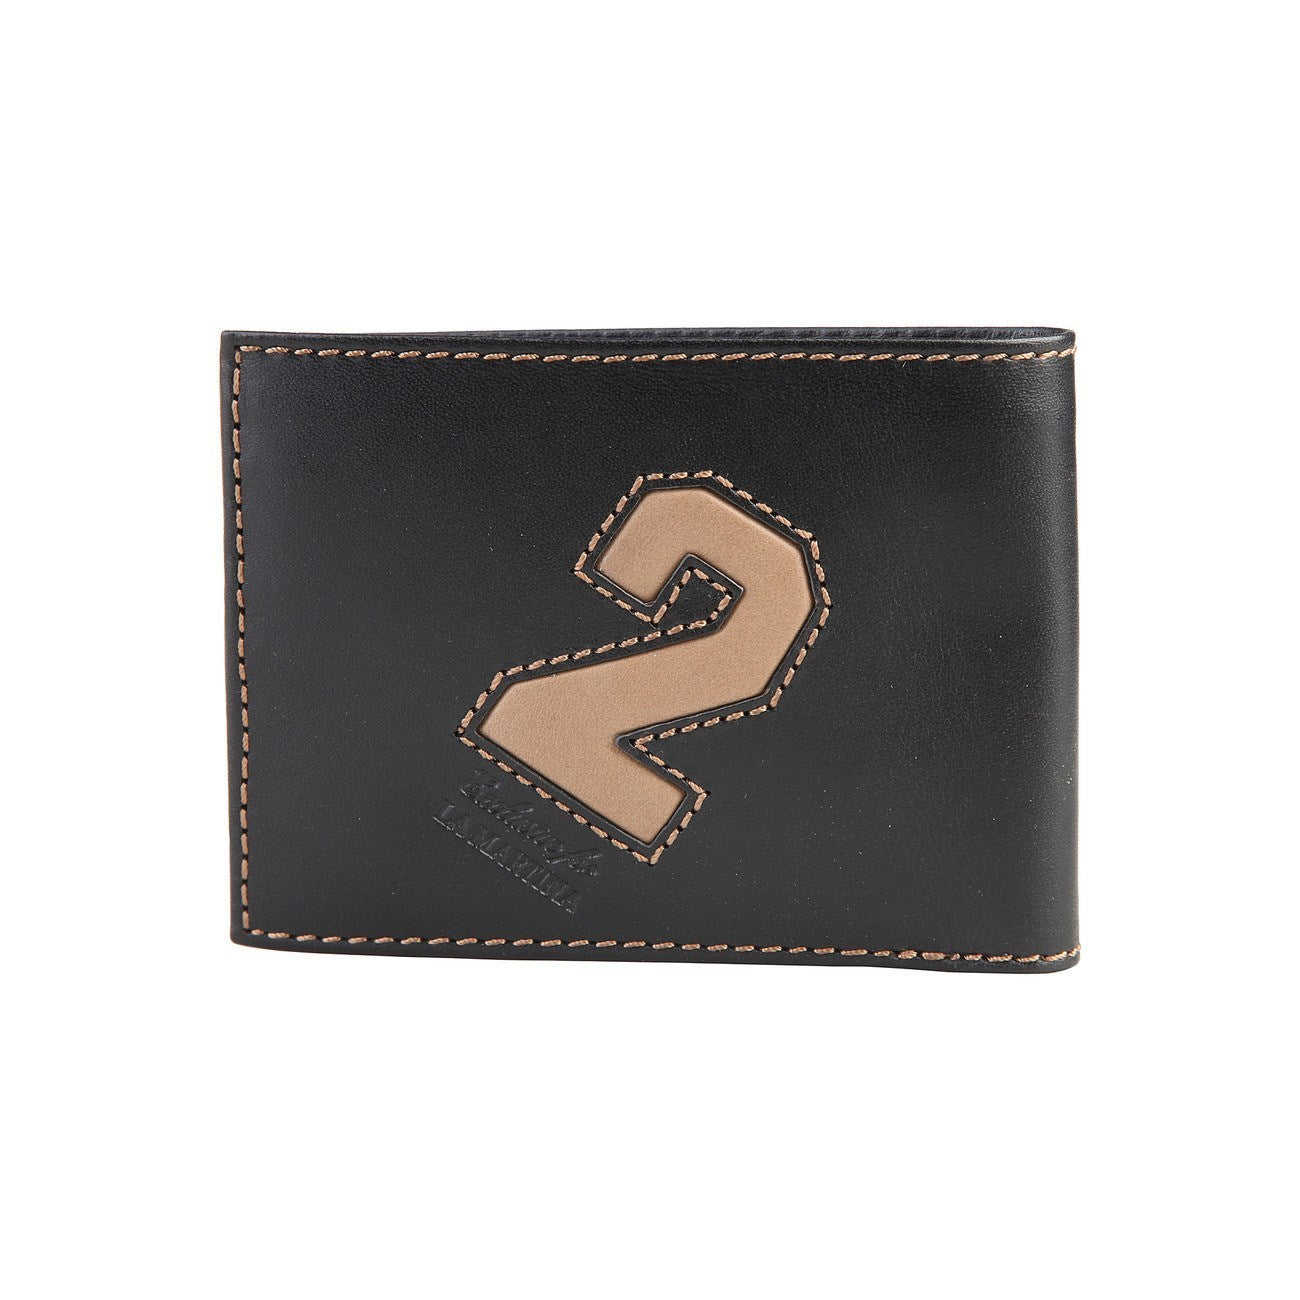 Louis Vuitton Artificial Leather Wallet - Men's Accessories BD